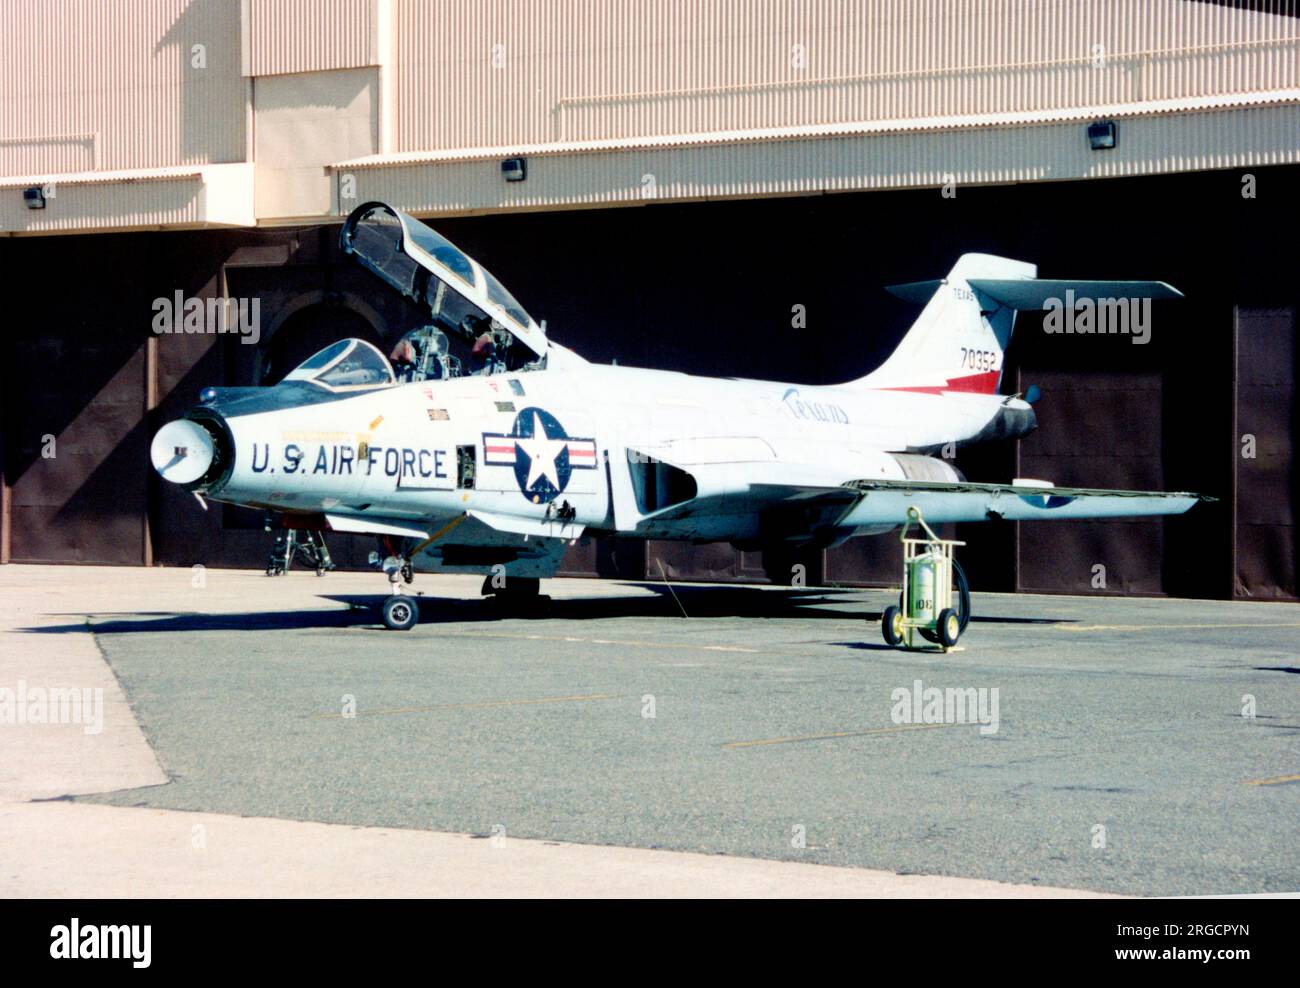 McDonnell F-101F-91-MC Voodoo 57-0352 (msn 530), conservé à McClellan AFB, CA., après utilisation pour l'entraînement ABDR (Aircraft Battle endommagé Repair) à Sacramento, CA. (Certaines zones endommagées utilisées pour la formation sont clairement visibles) Banque D'Images